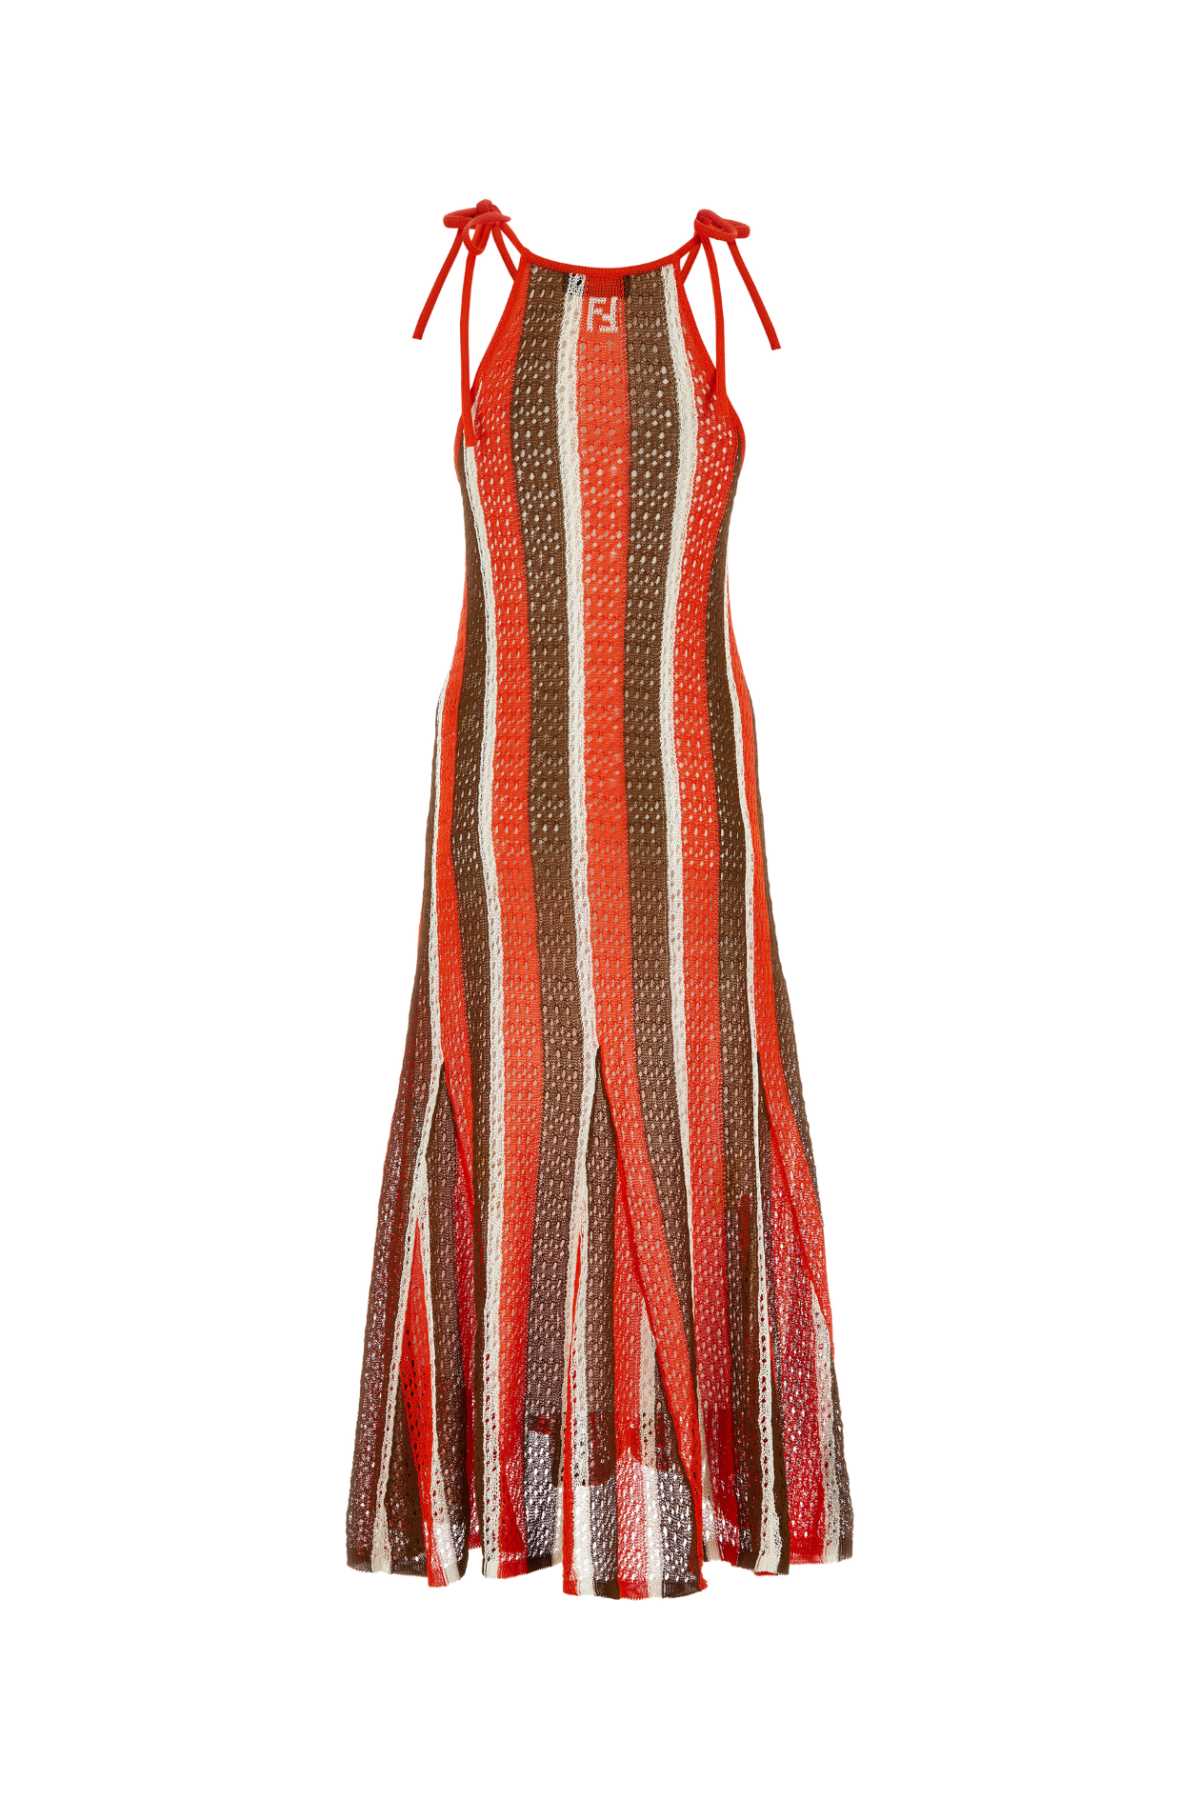 Fendi Multicolor Crochet Dress In Brown